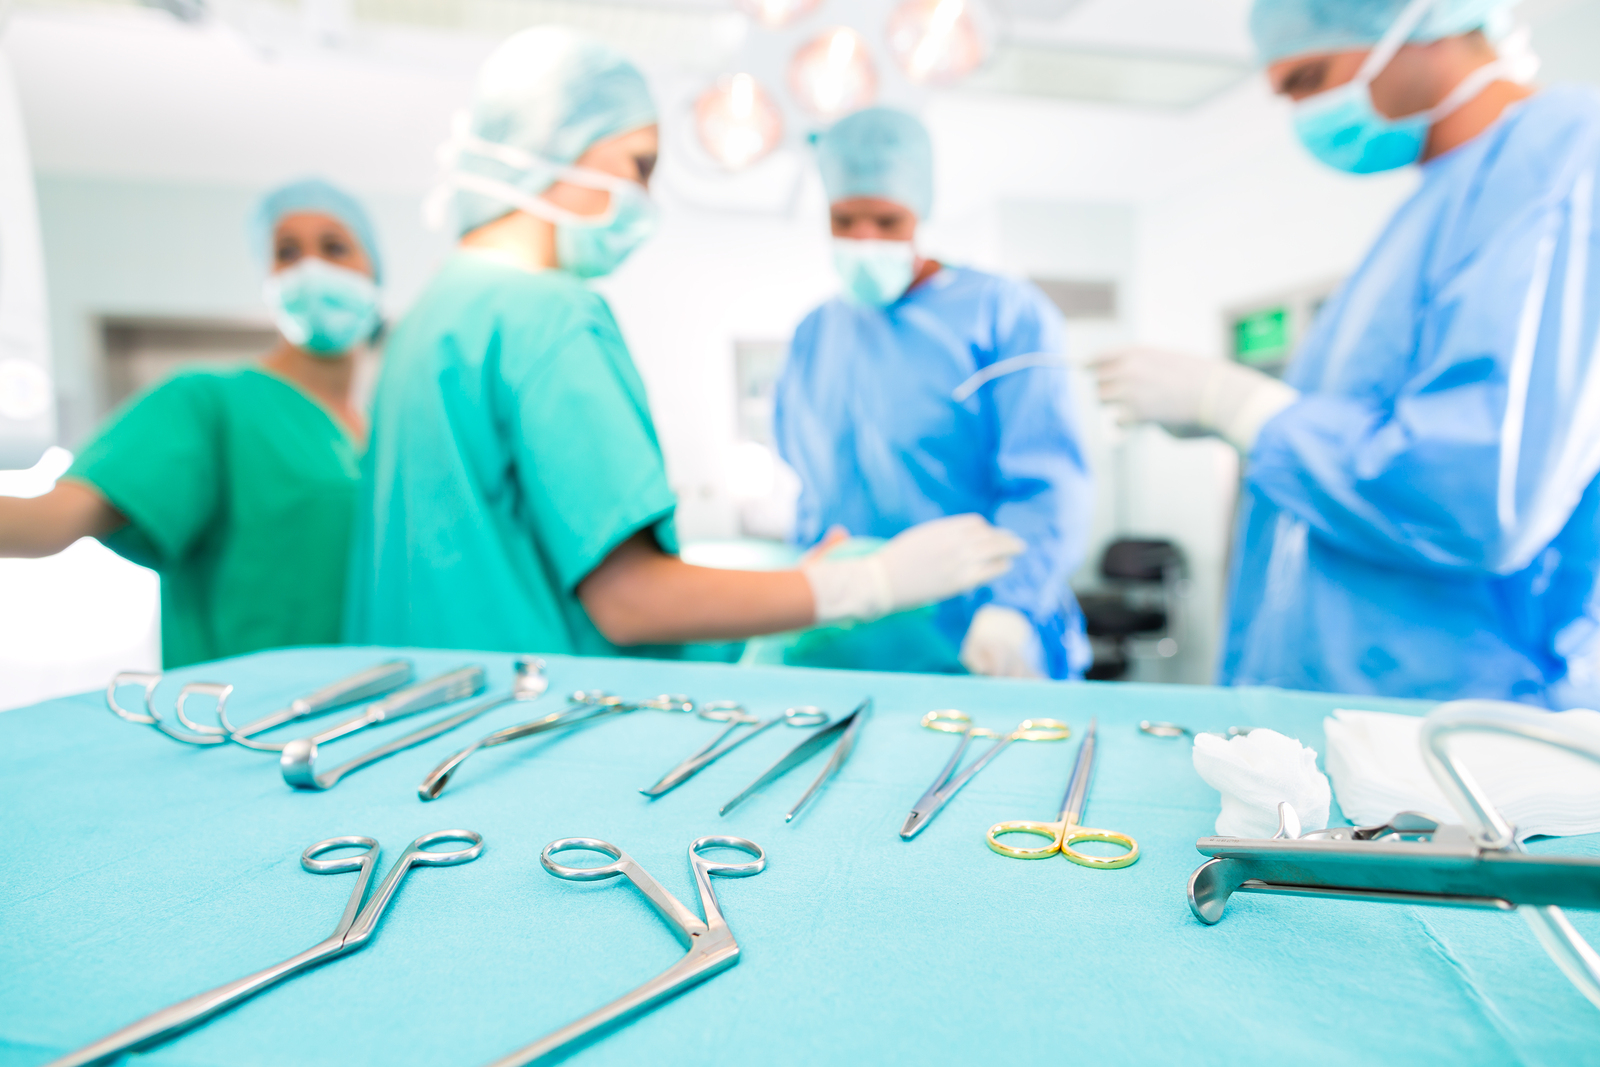 آیا می دانید بسیاری از عمل های جراحی بیهوده است و جایگزین دارد؟